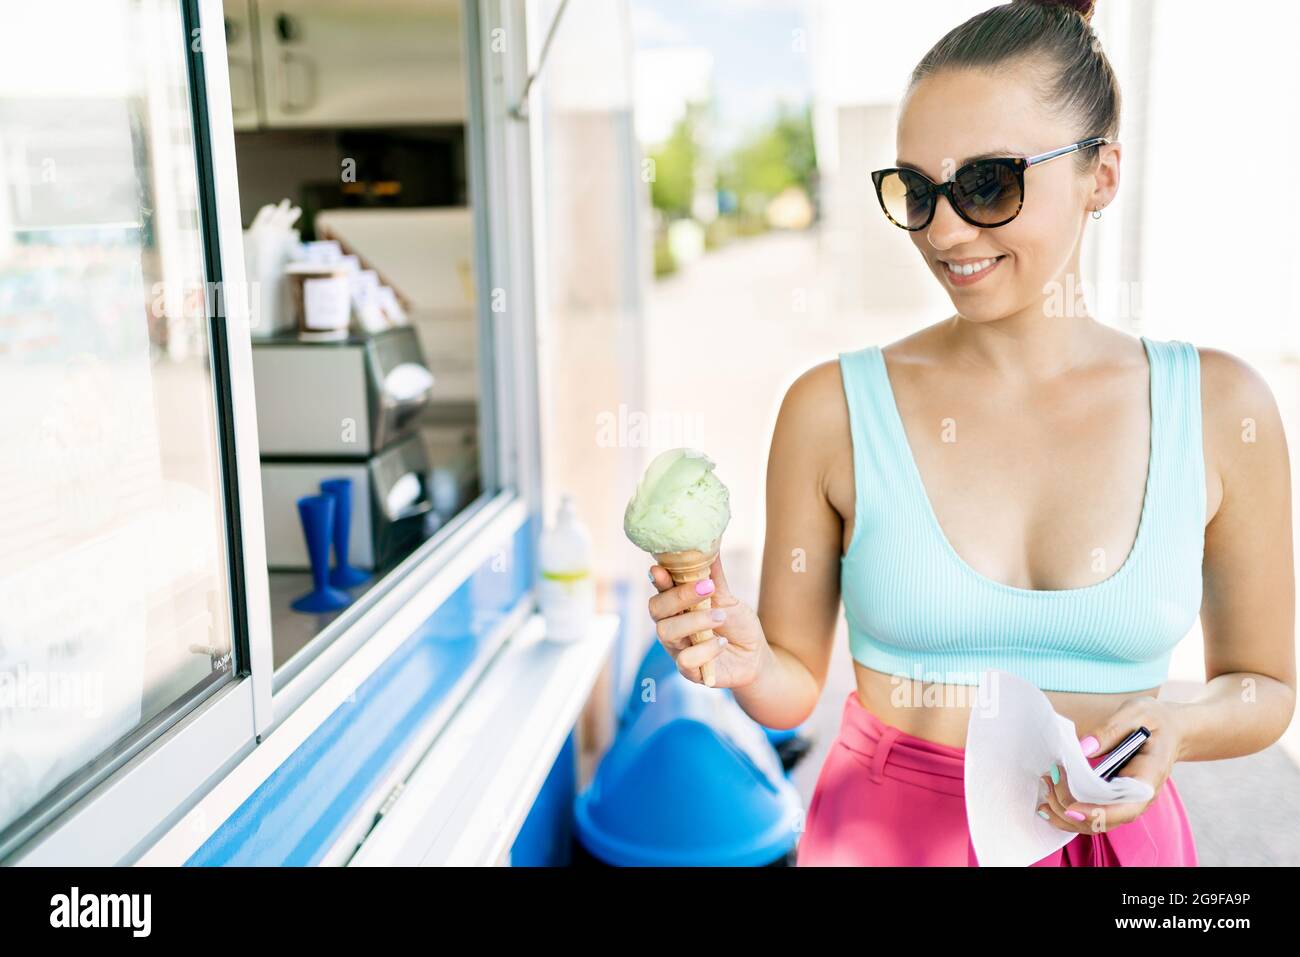 Un client heureux qui achète de la crème glacée dans un salon, un camion, une fourgonnette ou un kiosque. Glaces à emporter en été. Femme souriante tenant le cône de glace à la main. Banque D'Images